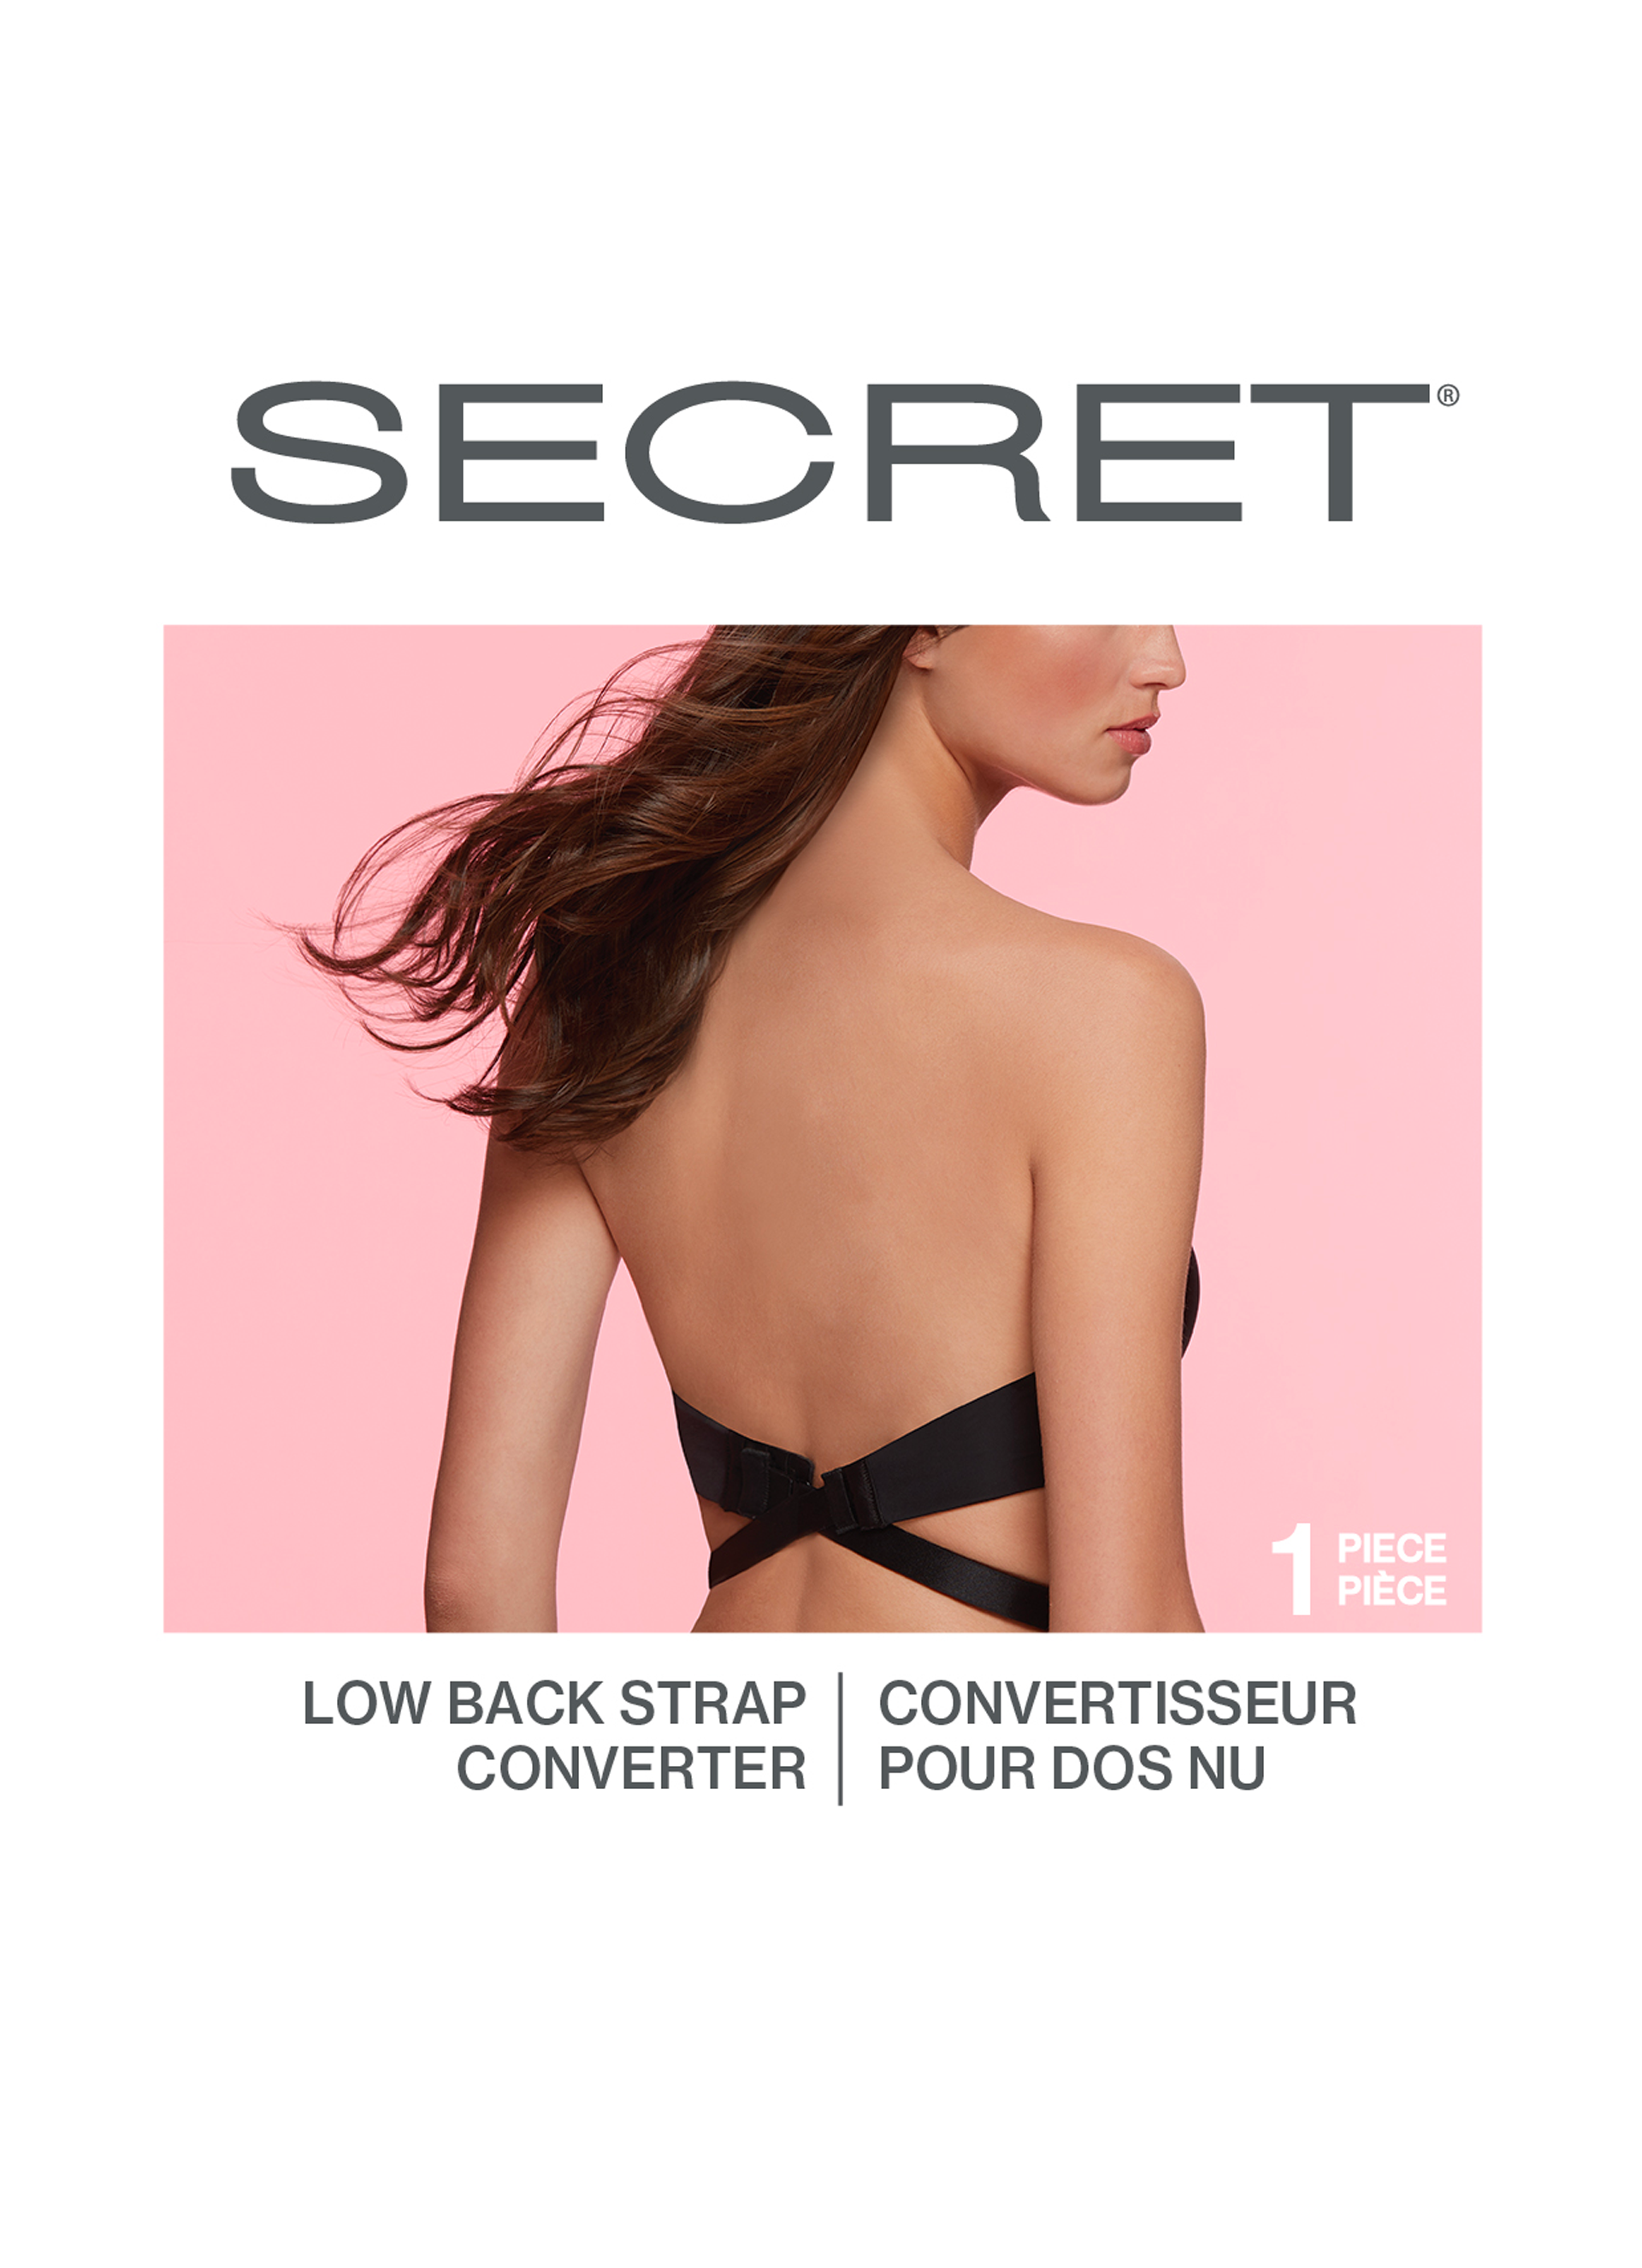 SECRET® Adjustable Low Back Converter Strap - 1 Piece